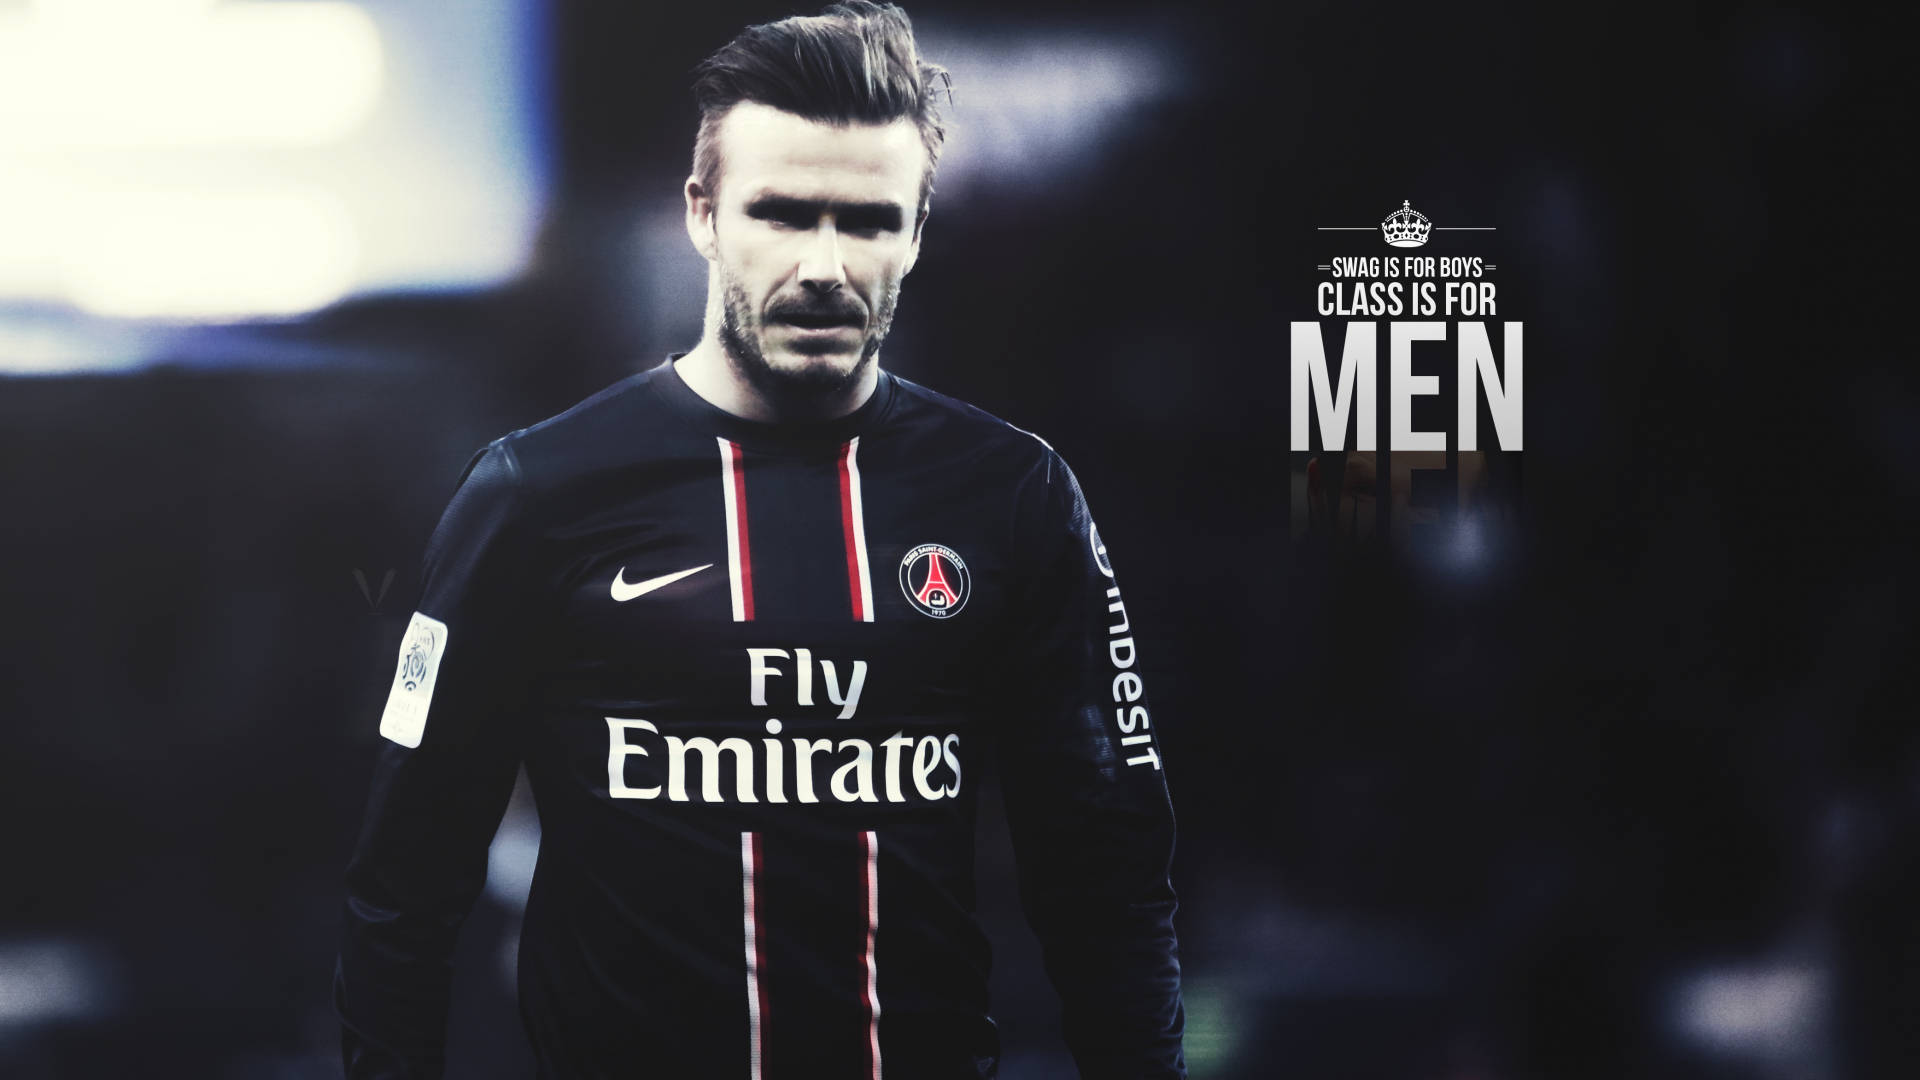 David Beckham - Soccer Superstar Background